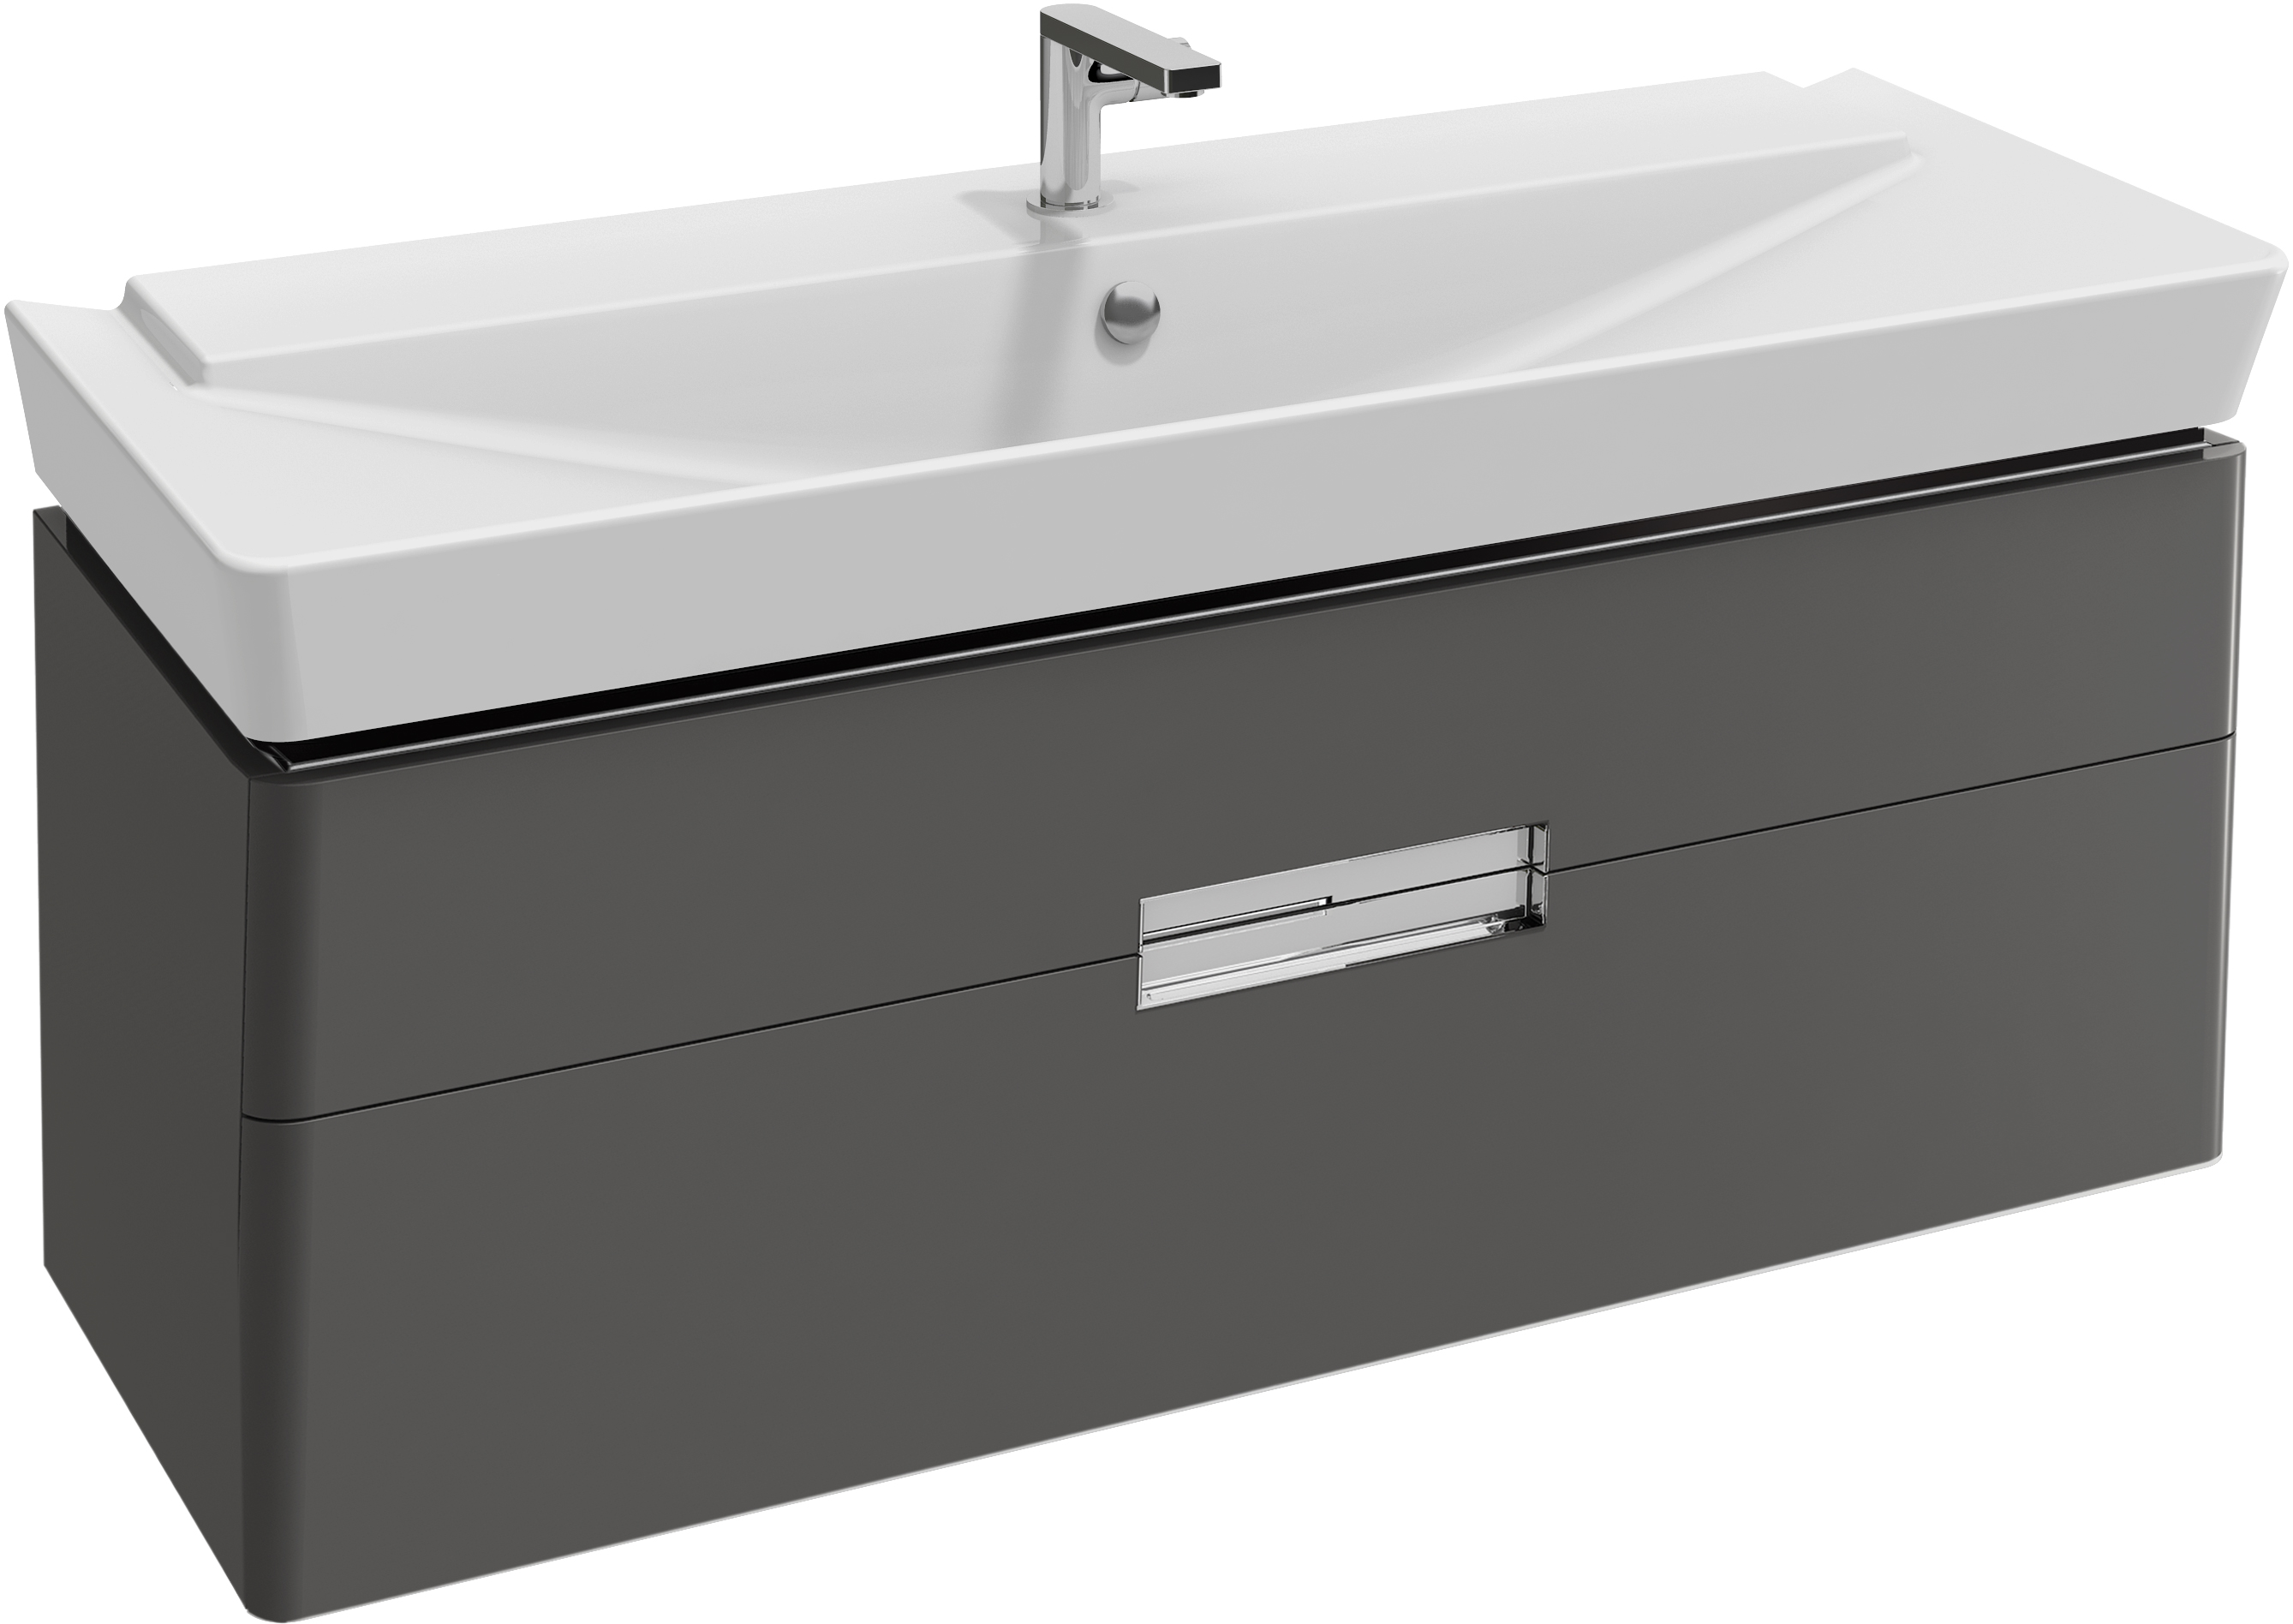 Мебель для ванной Jacob Delafon Reve 120 серый антрацит, 2 ящика